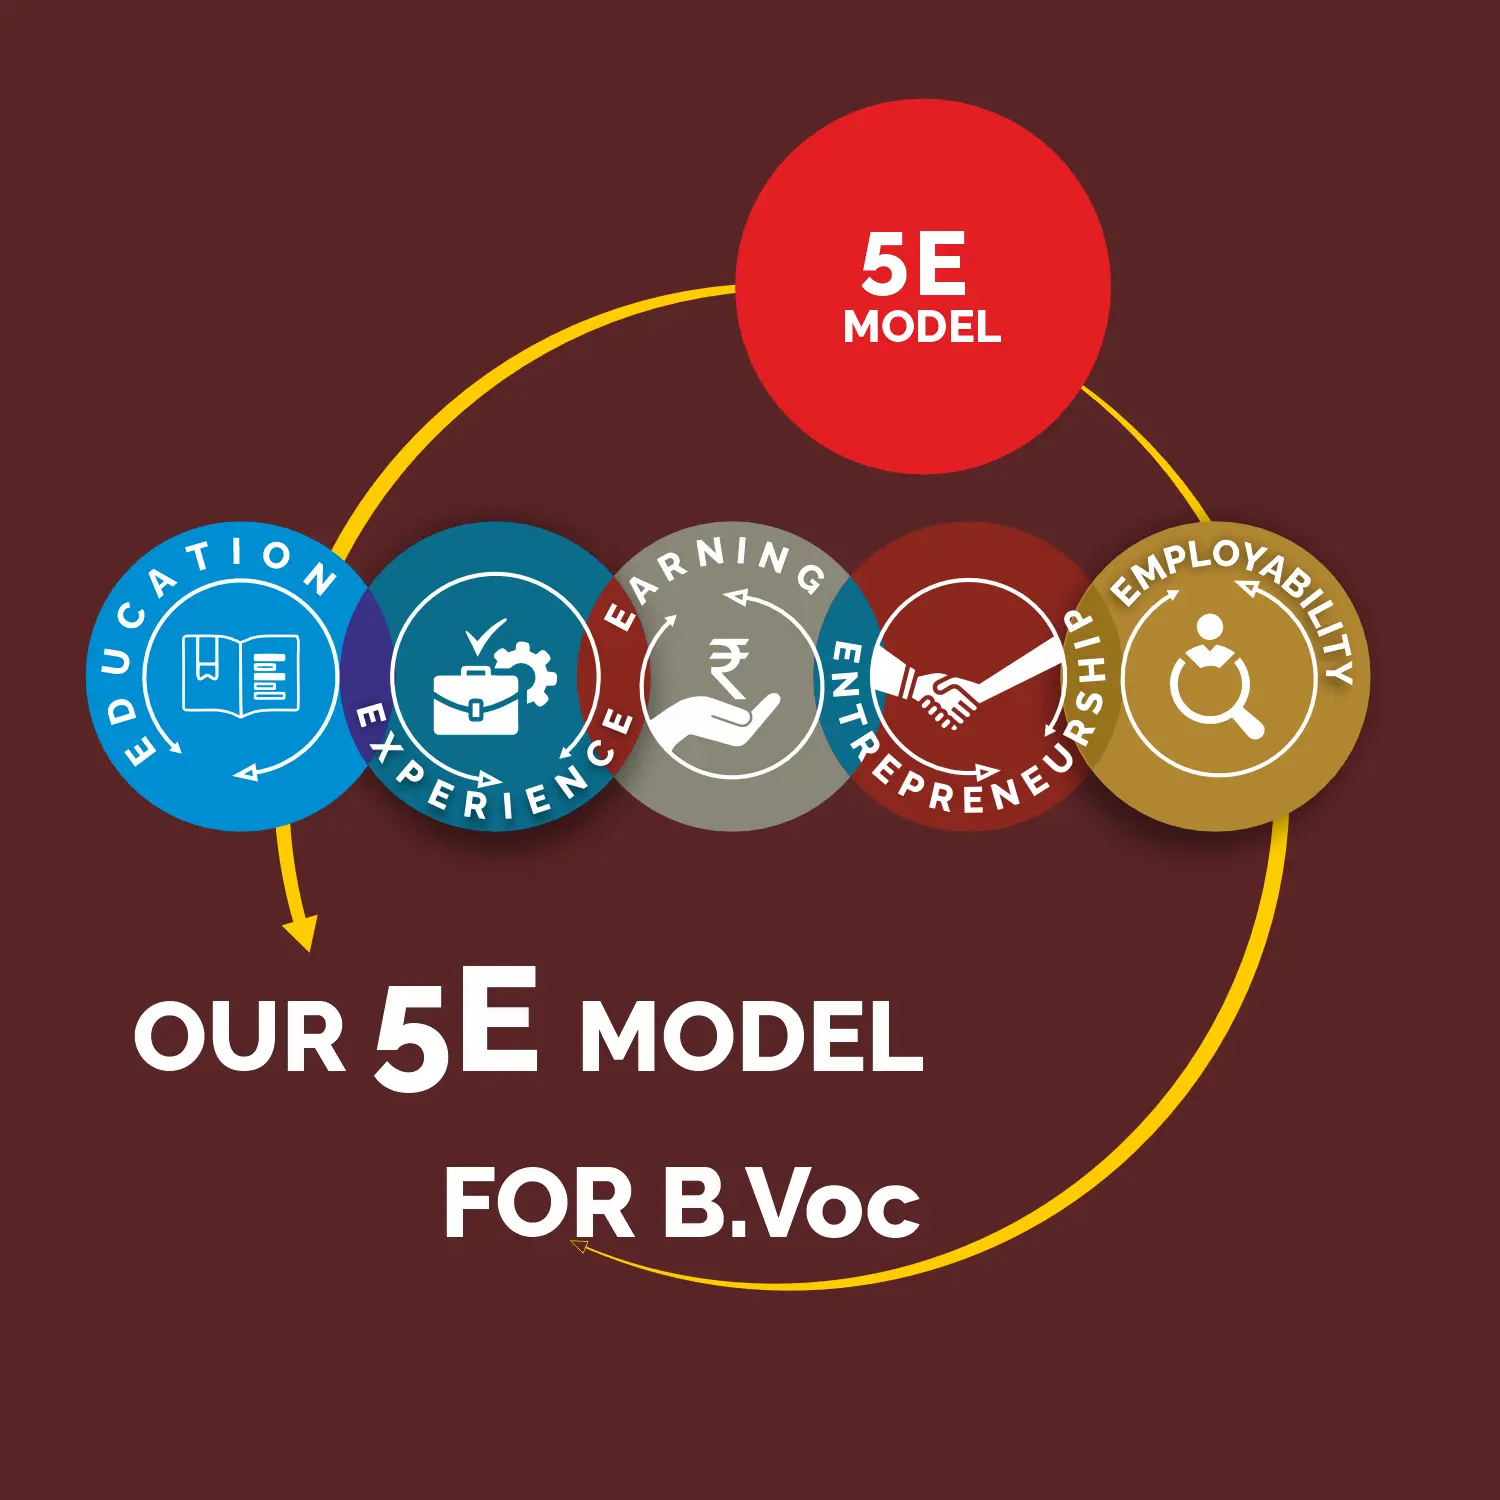 5E Model of B.Voc